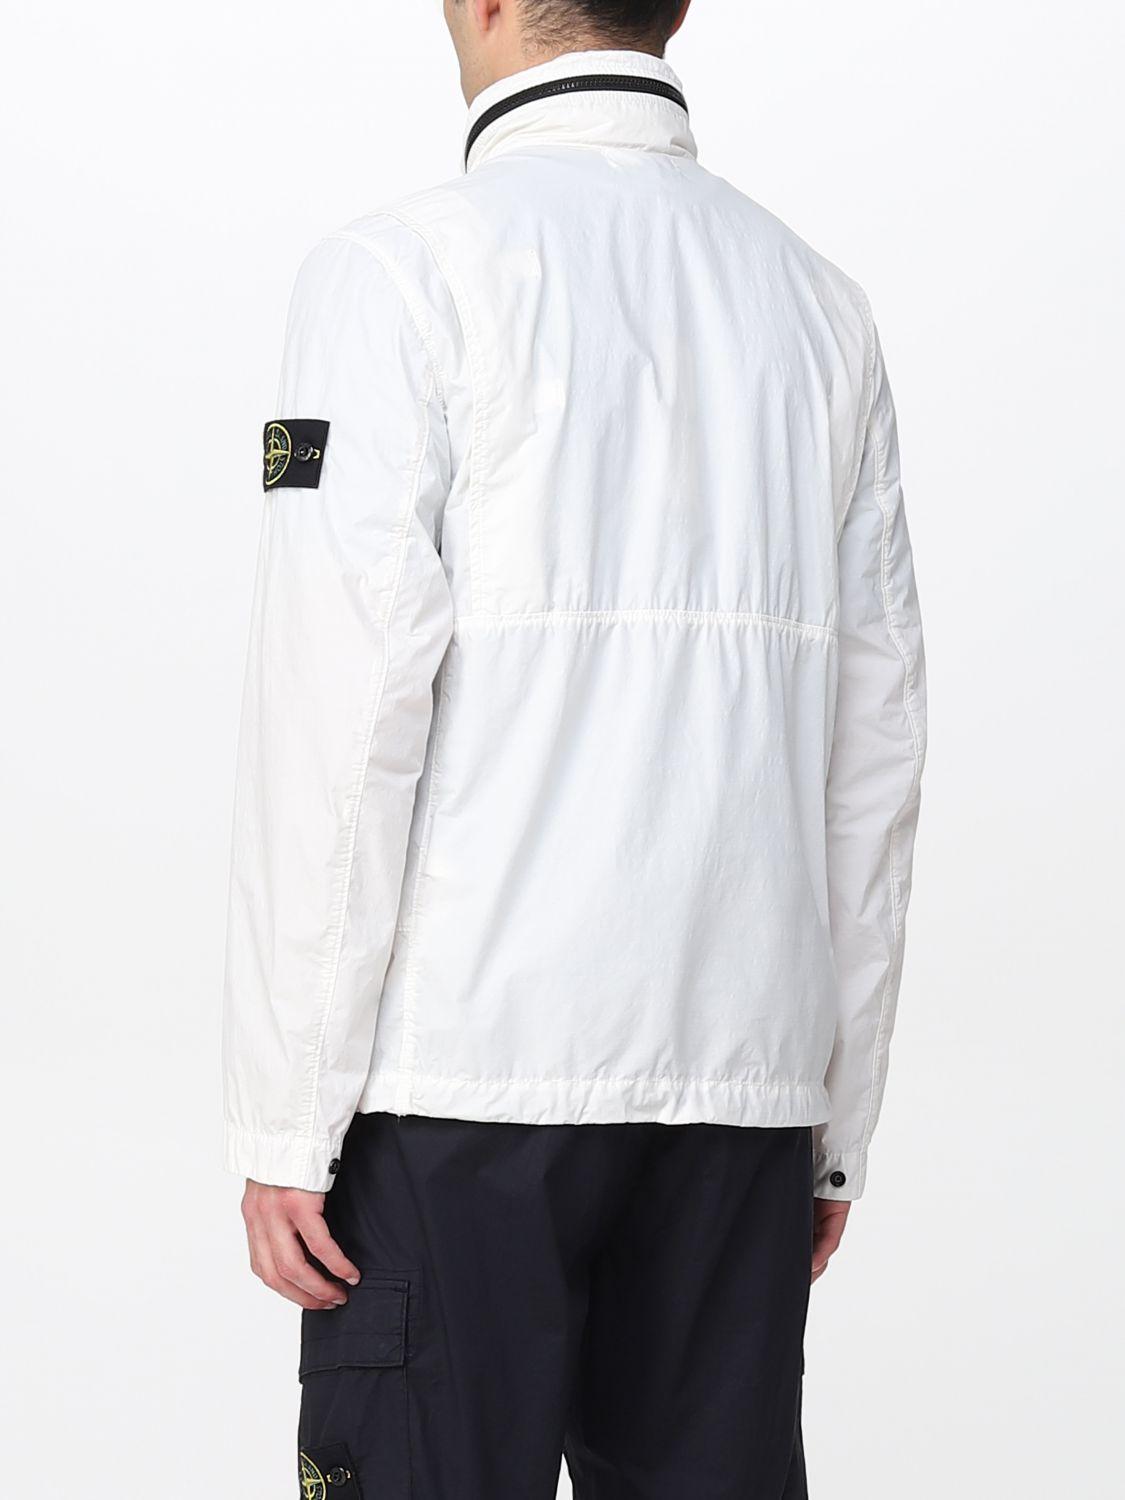 stone island nylon jacket ナイロンジャケット ジャケット/アウター メンズ 人気の新作